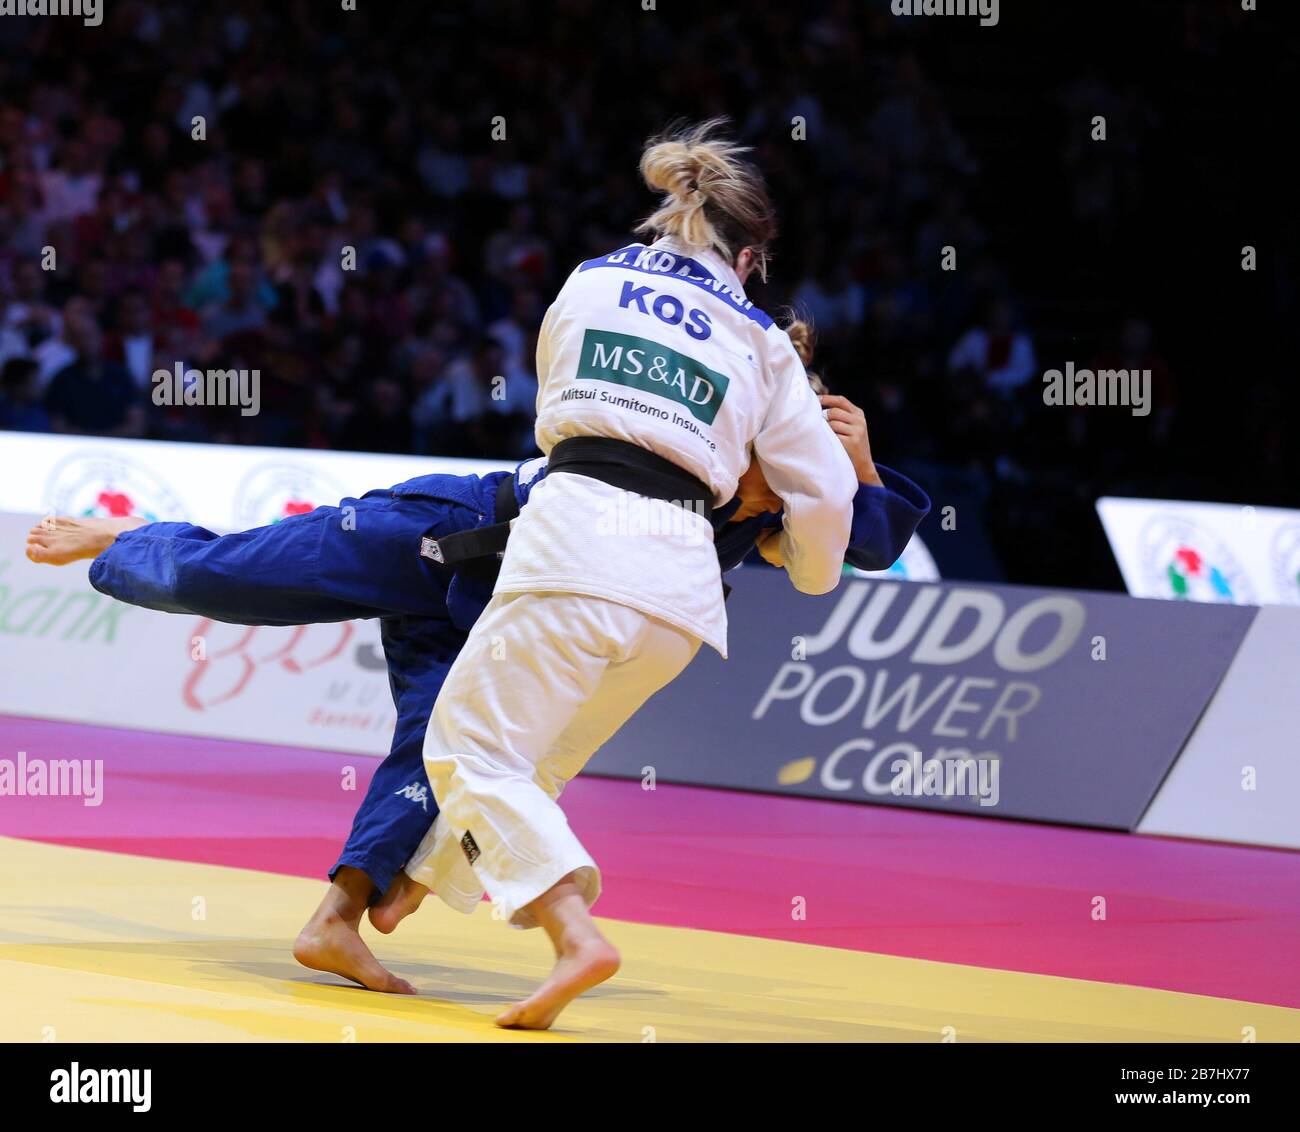 Paris, France - 08 février 2020: Disla Krasniqi pour le Kosovo contre Odette Giuffrida pour l'Italie, femmes -52 kg, médaille d'or (crédit: Mickael Chavet) Banque D'Images